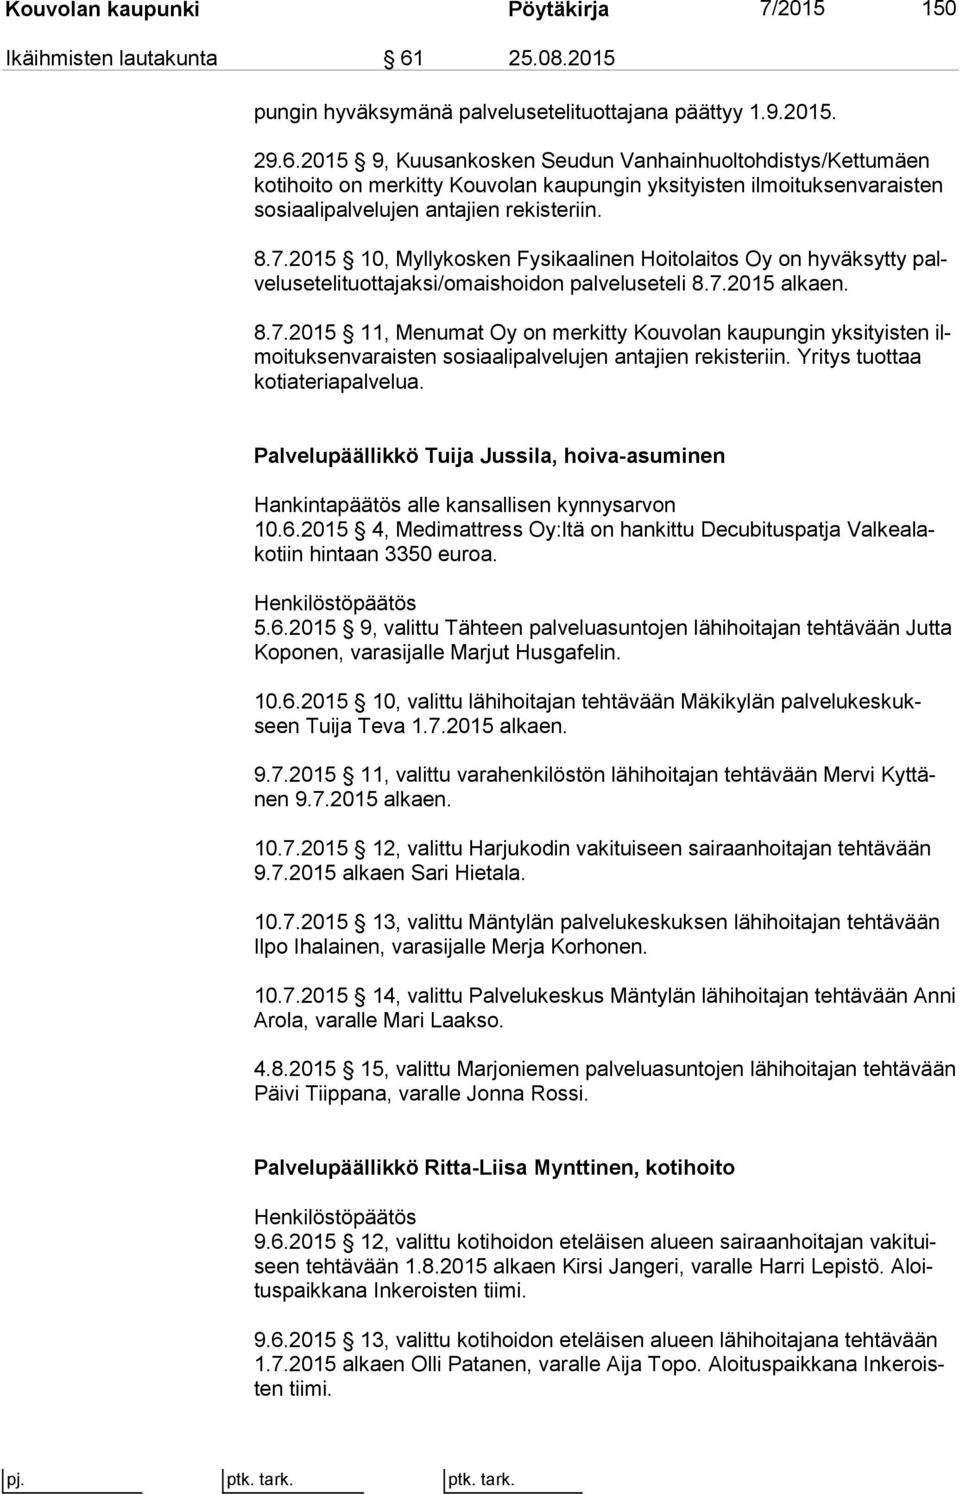 2015 9, Kuusankosken Seudun Vanhainhuoltohdistys/Kettumäen ko ti hoi to on merkitty Kouvolan kaupungin yksityisten il moi tuk sen va rais ten sosiaalipalvelujen antajien rekisteriin. 8.7.